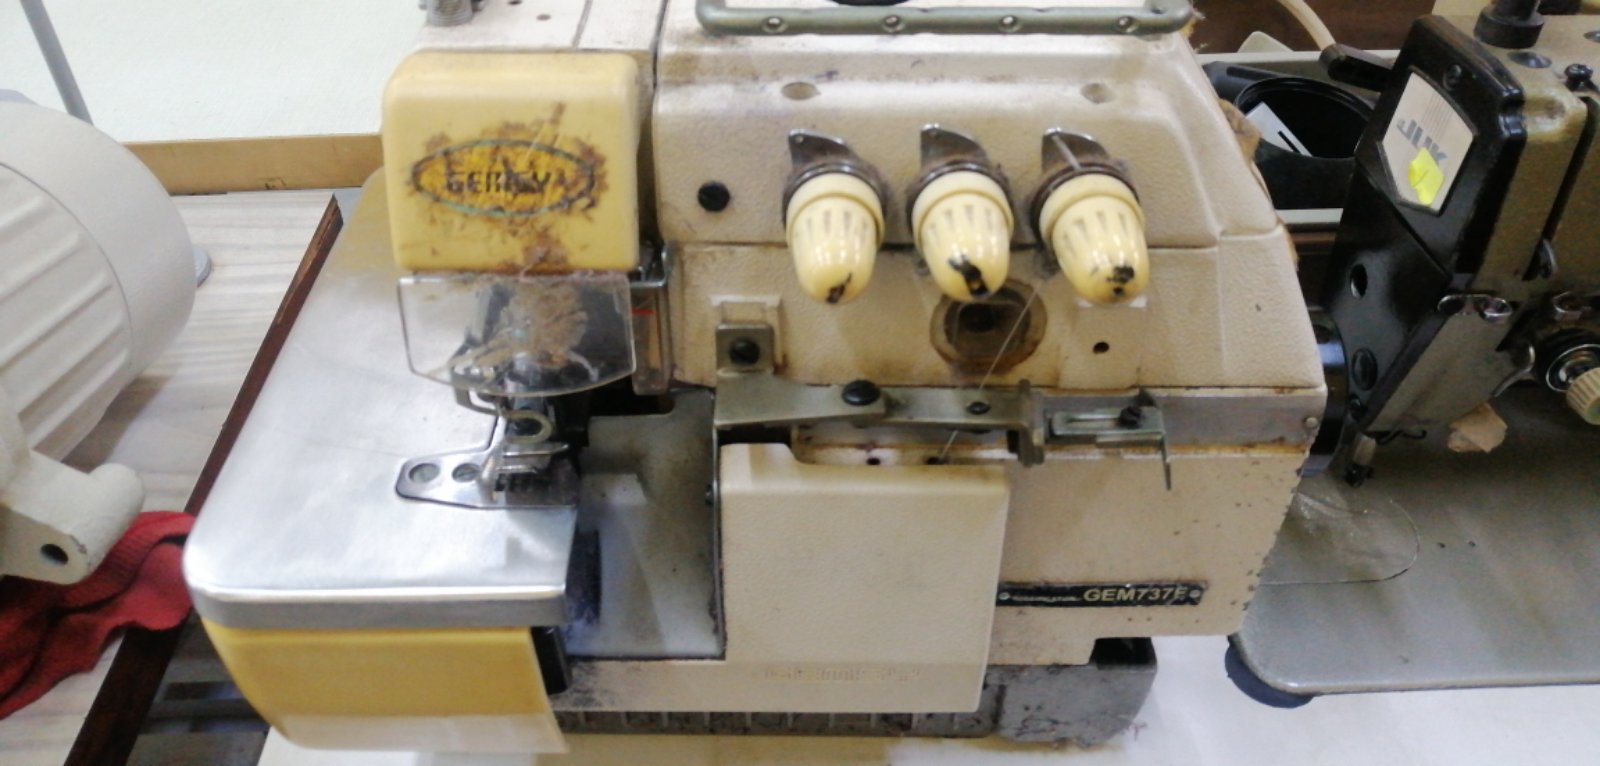 Repair Sevis Gemsy Industrial Overlock Sewing Machine